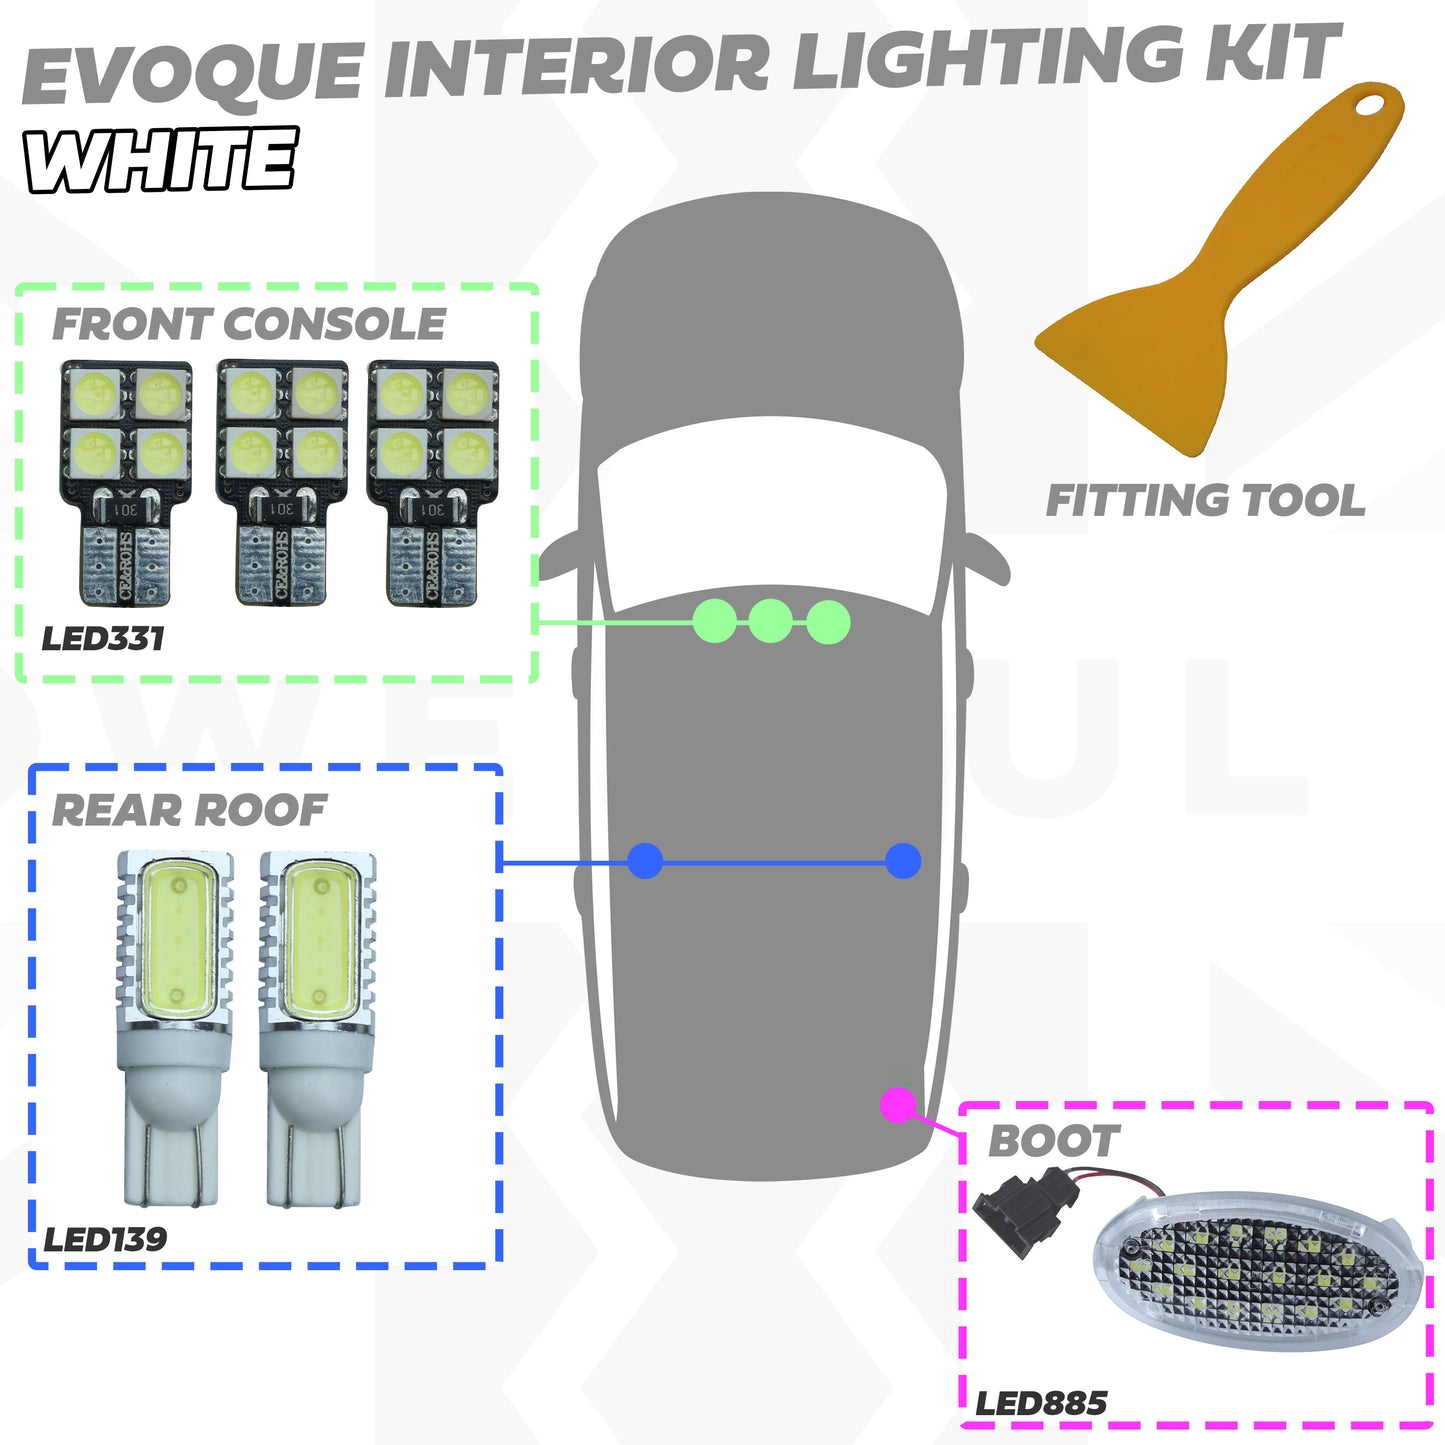 LED Interior Light Upgrade Kit - 6 pc - White - for Range Rover Evoque